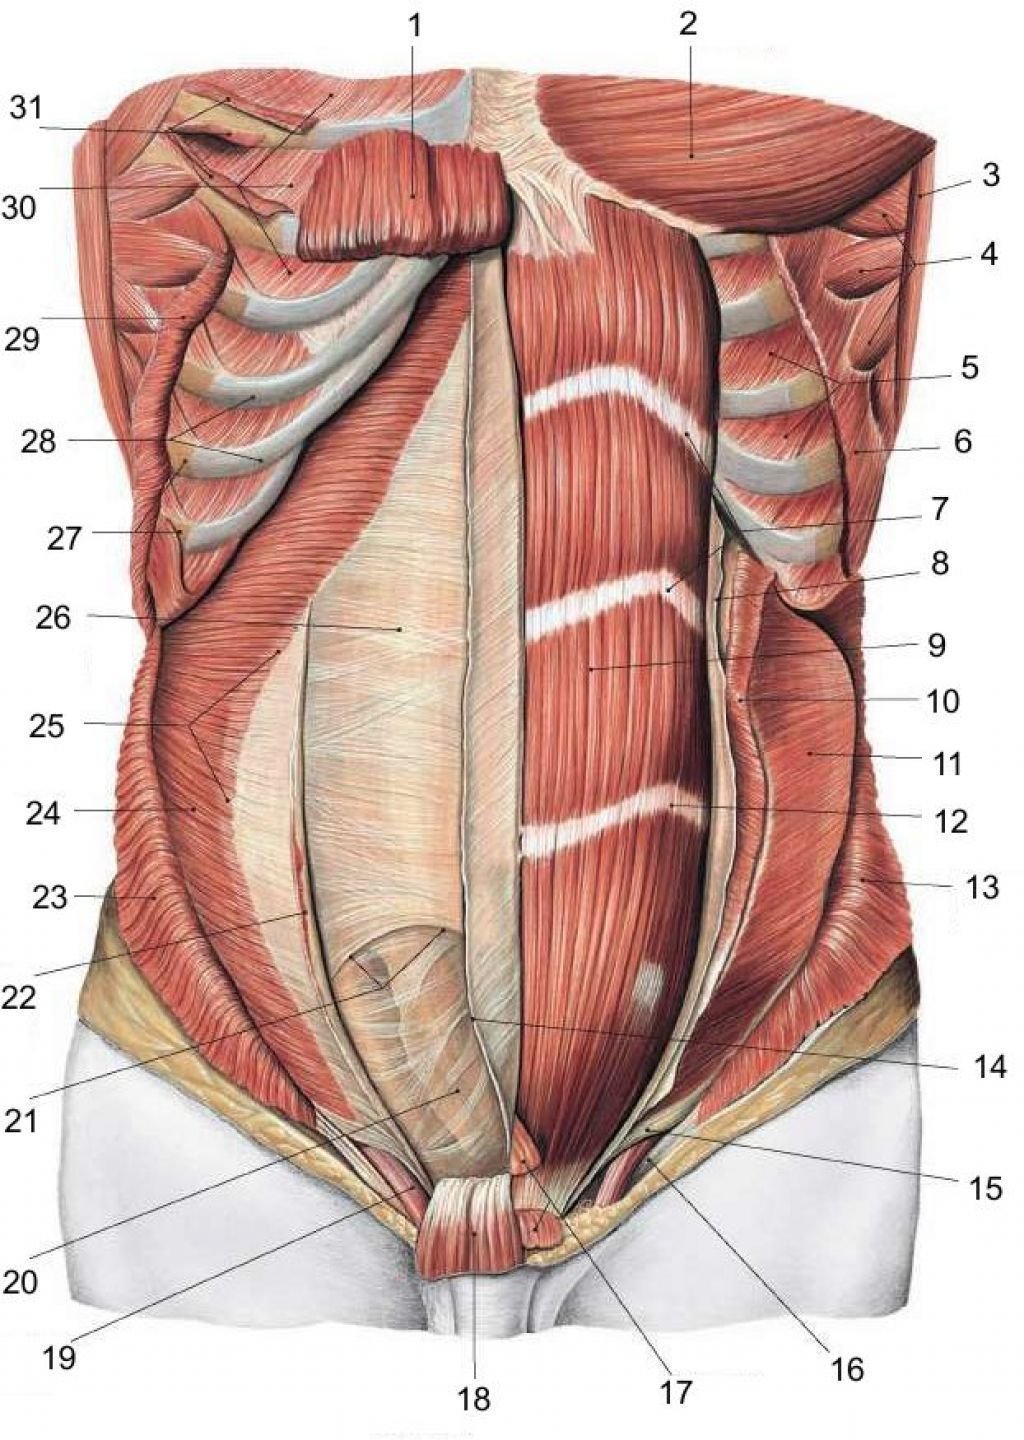 Образование в области живота. Мышцы и фасции живота анатомия. Сухожильные перемычки прямой мышцы живота. Мышцы живота послойно анатомия. Передняя брюшная стенка мышцы анатомия.